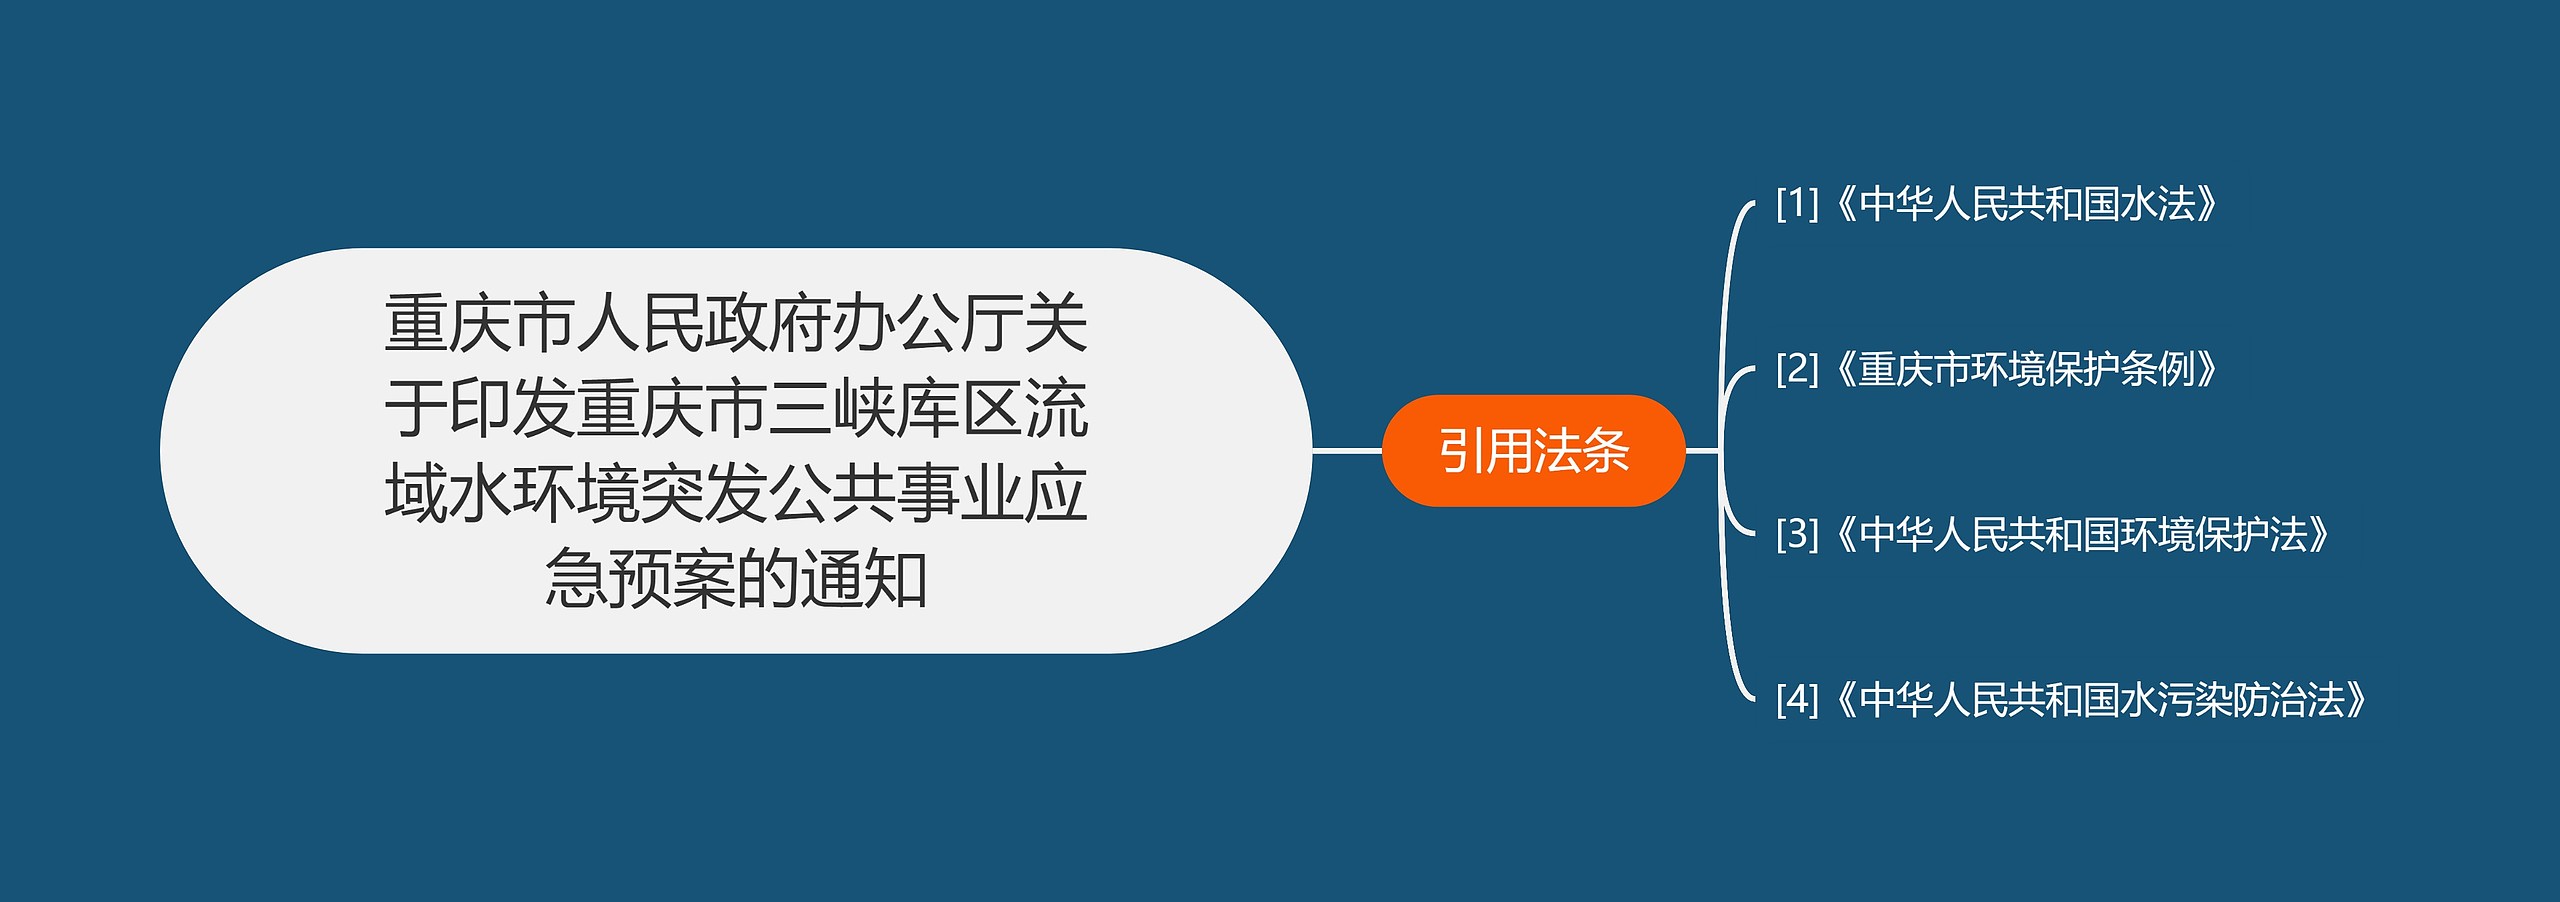 重庆市人民政府办公厅关于印发重庆市三峡库区流域水环境突发公共事业应急预案的通知